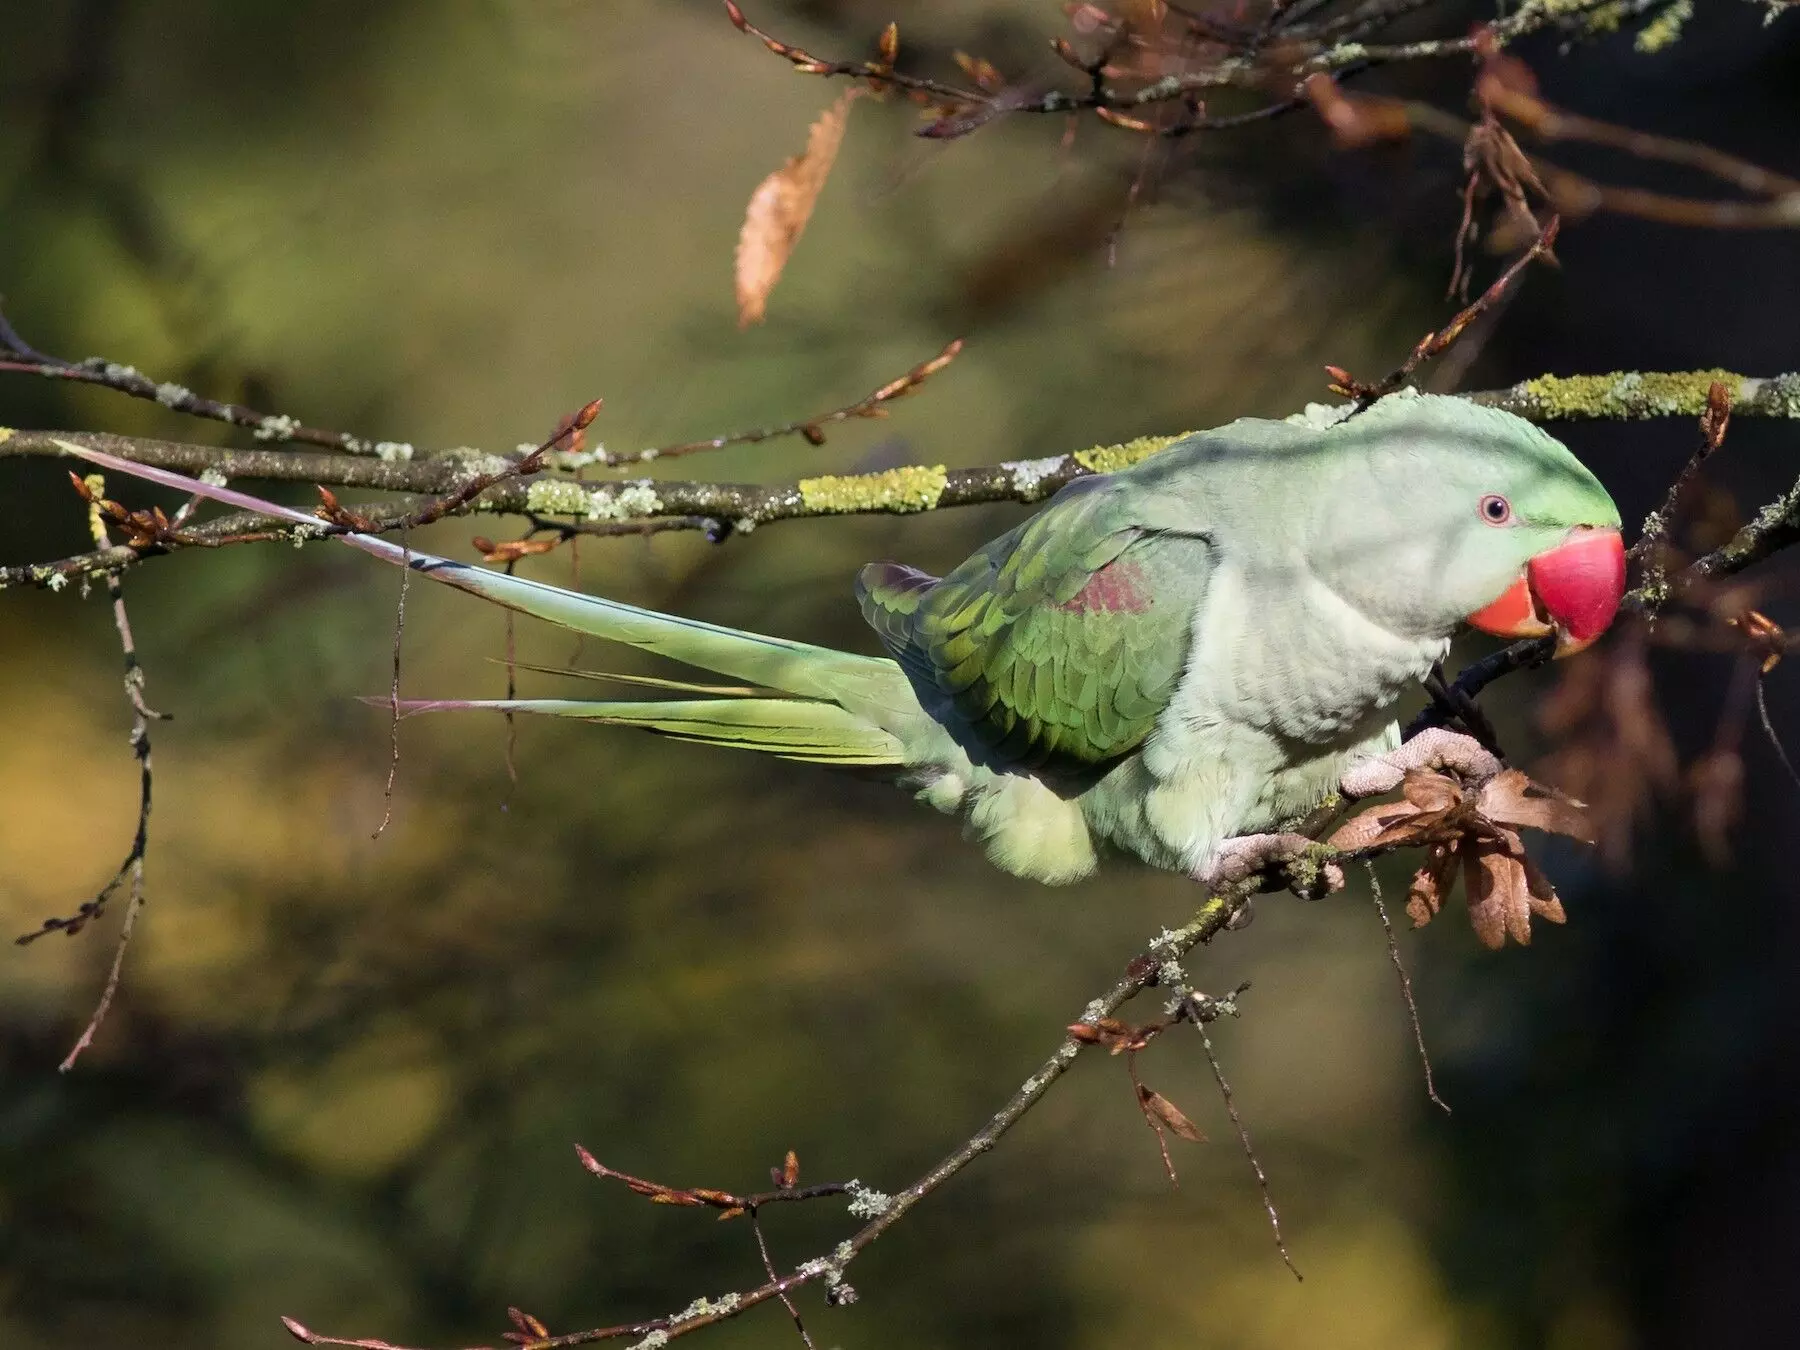 Wildlife officials save nine rare parrots in Uttar Pradesh